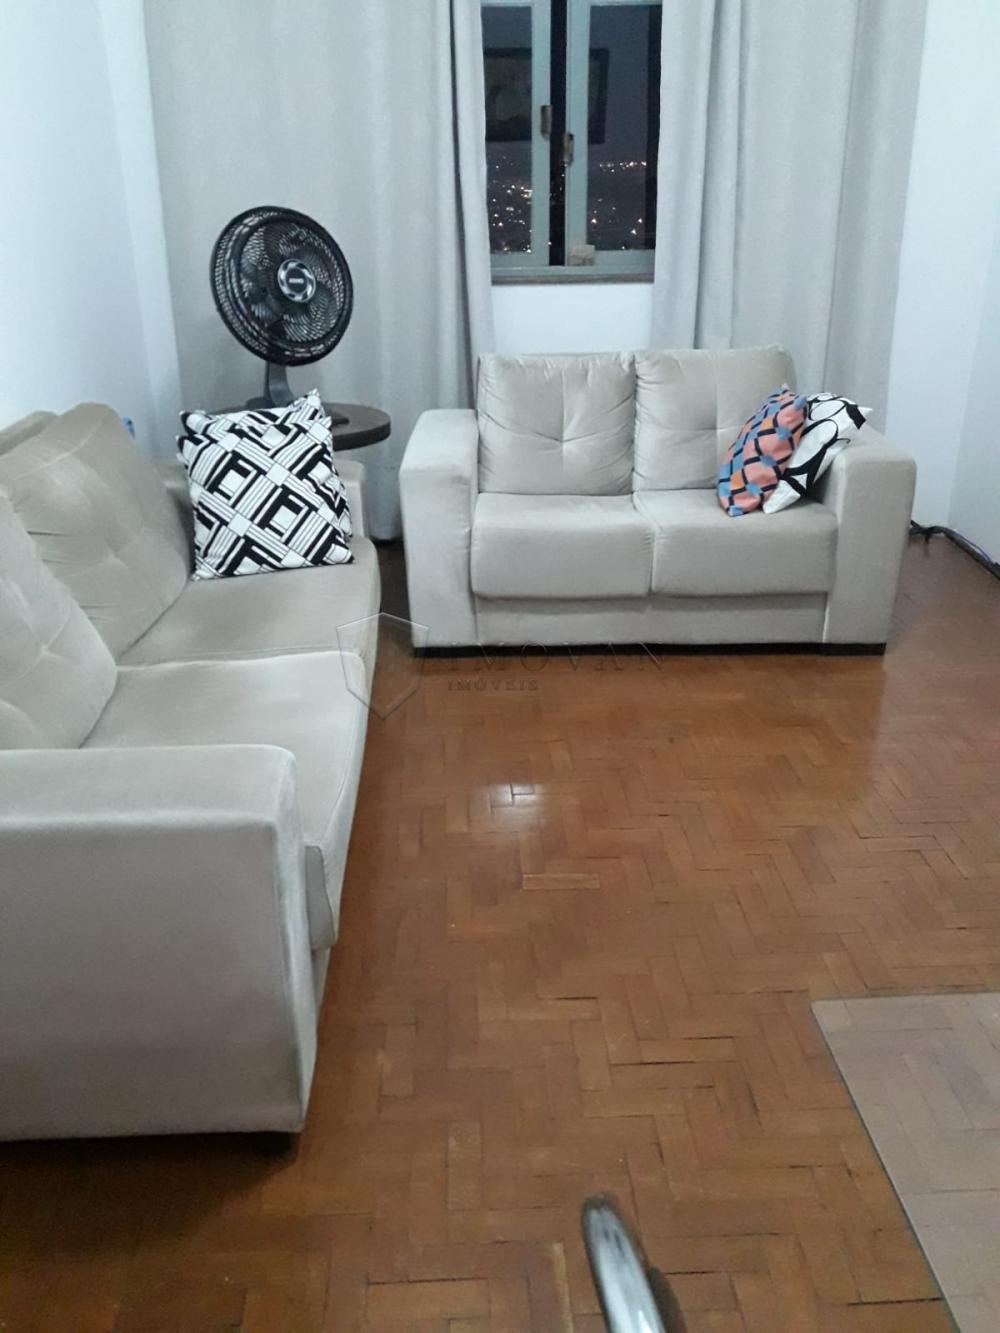 Comprar Apartamento / Padrão em Ribeirão Preto R$ 235.000,00 - Foto 2